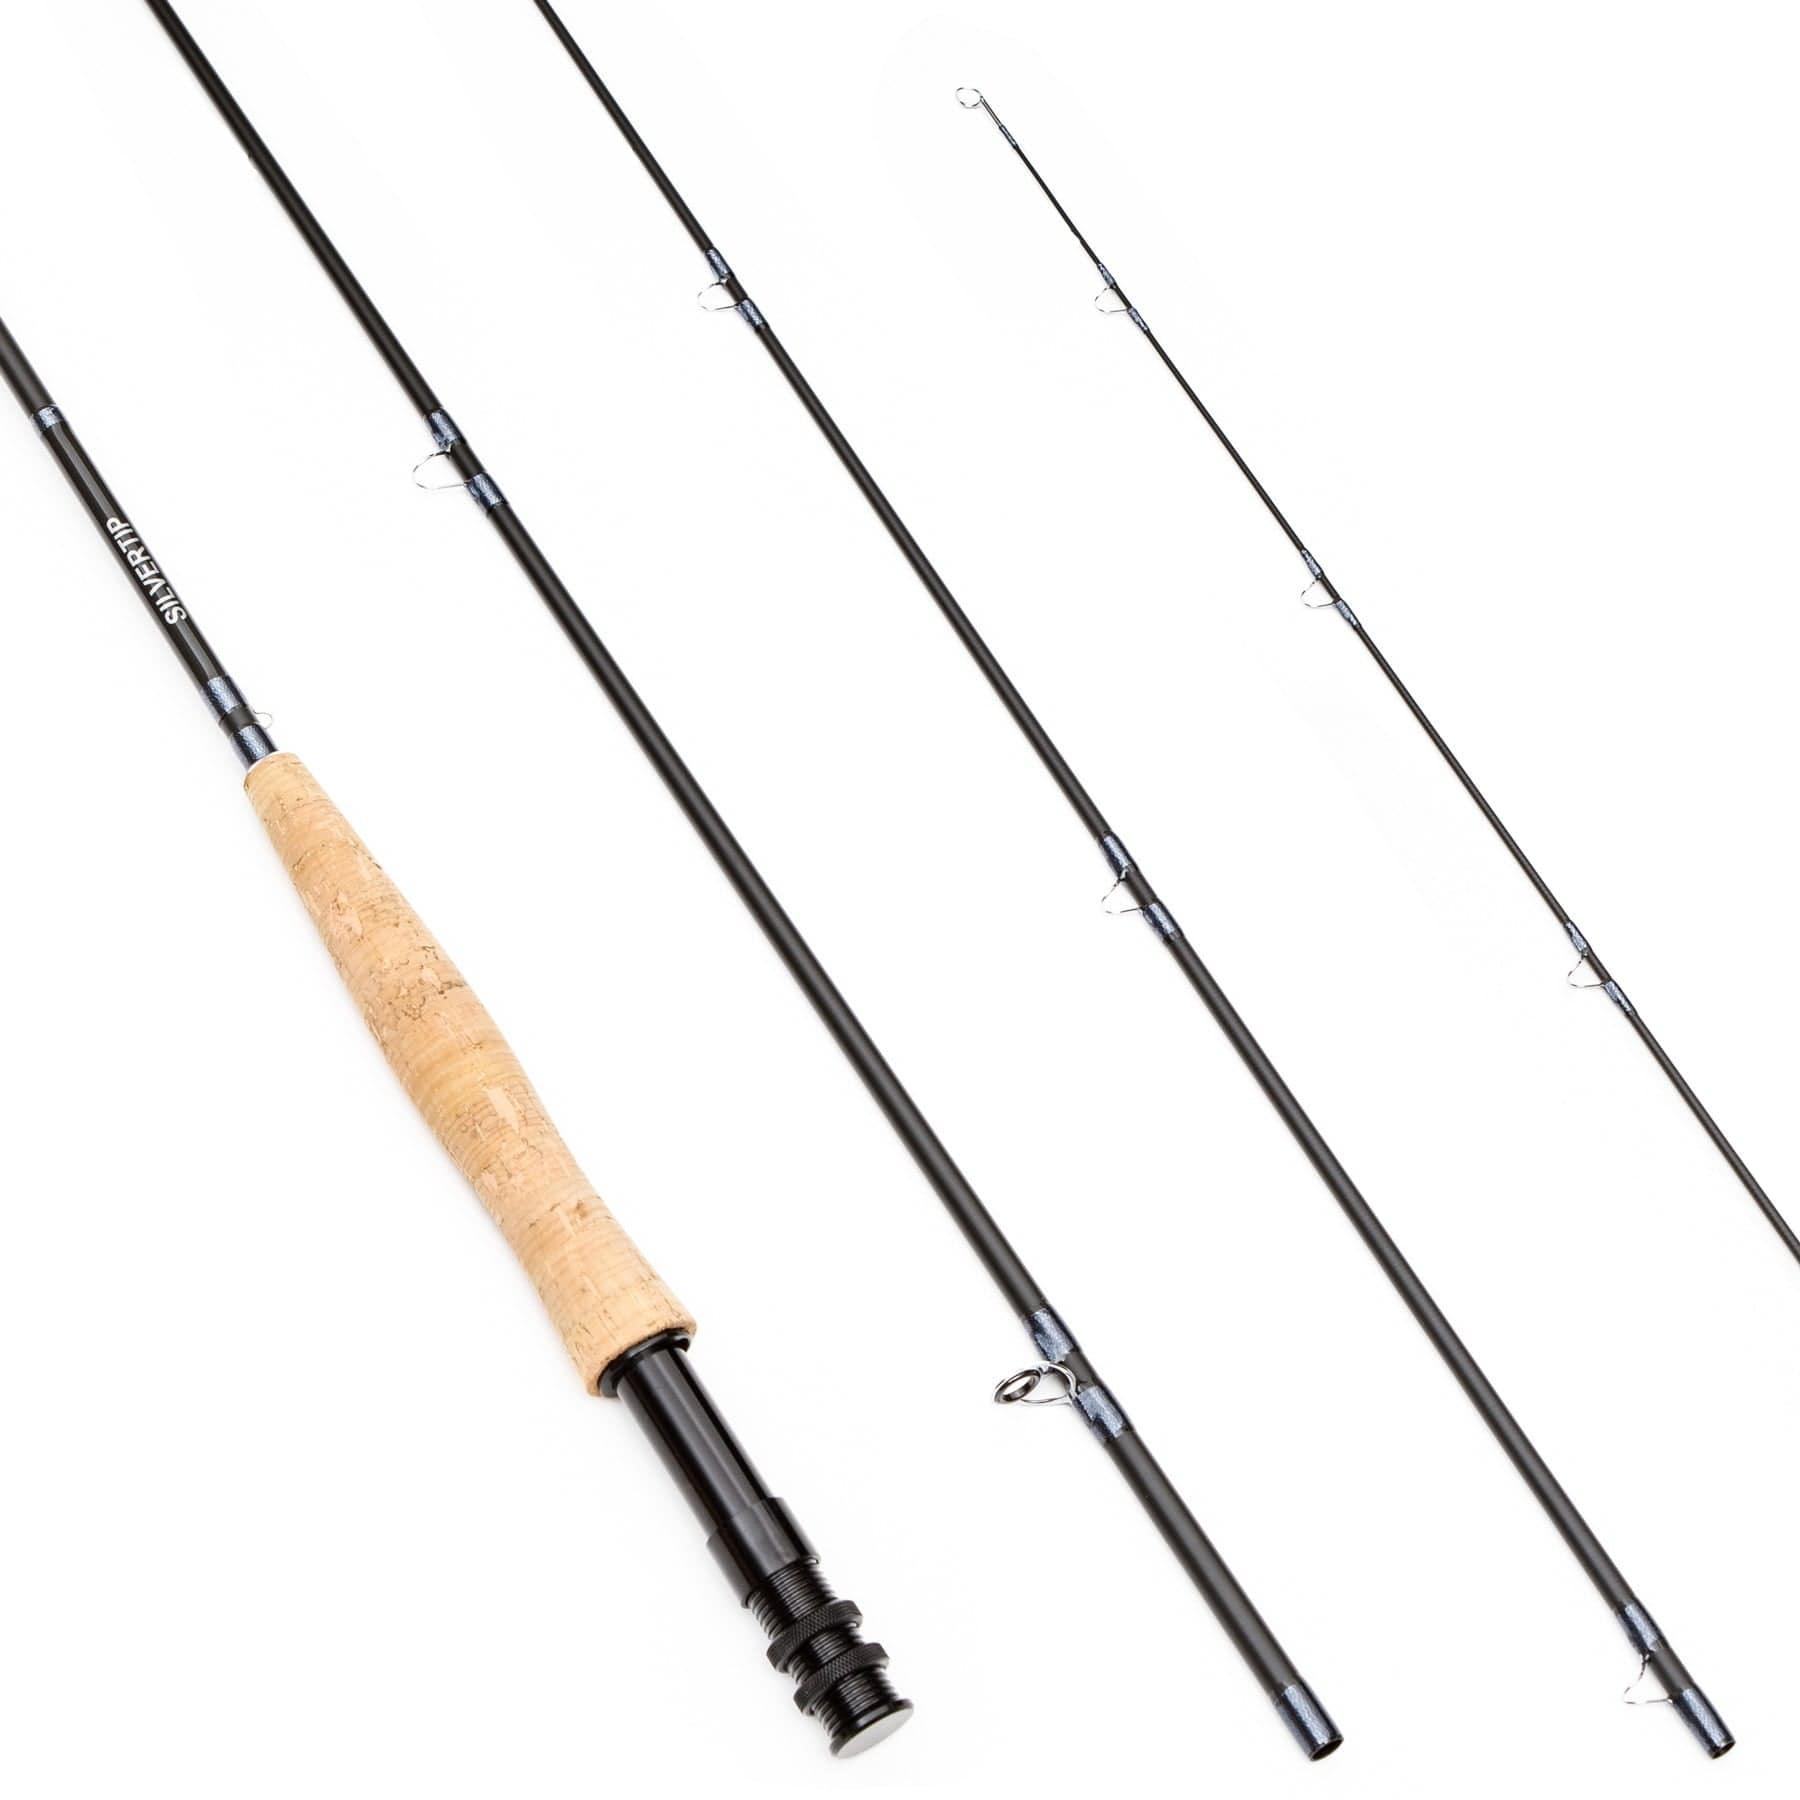 daiwa rod set - Buy daiwa rod set at Best Price in Malaysia